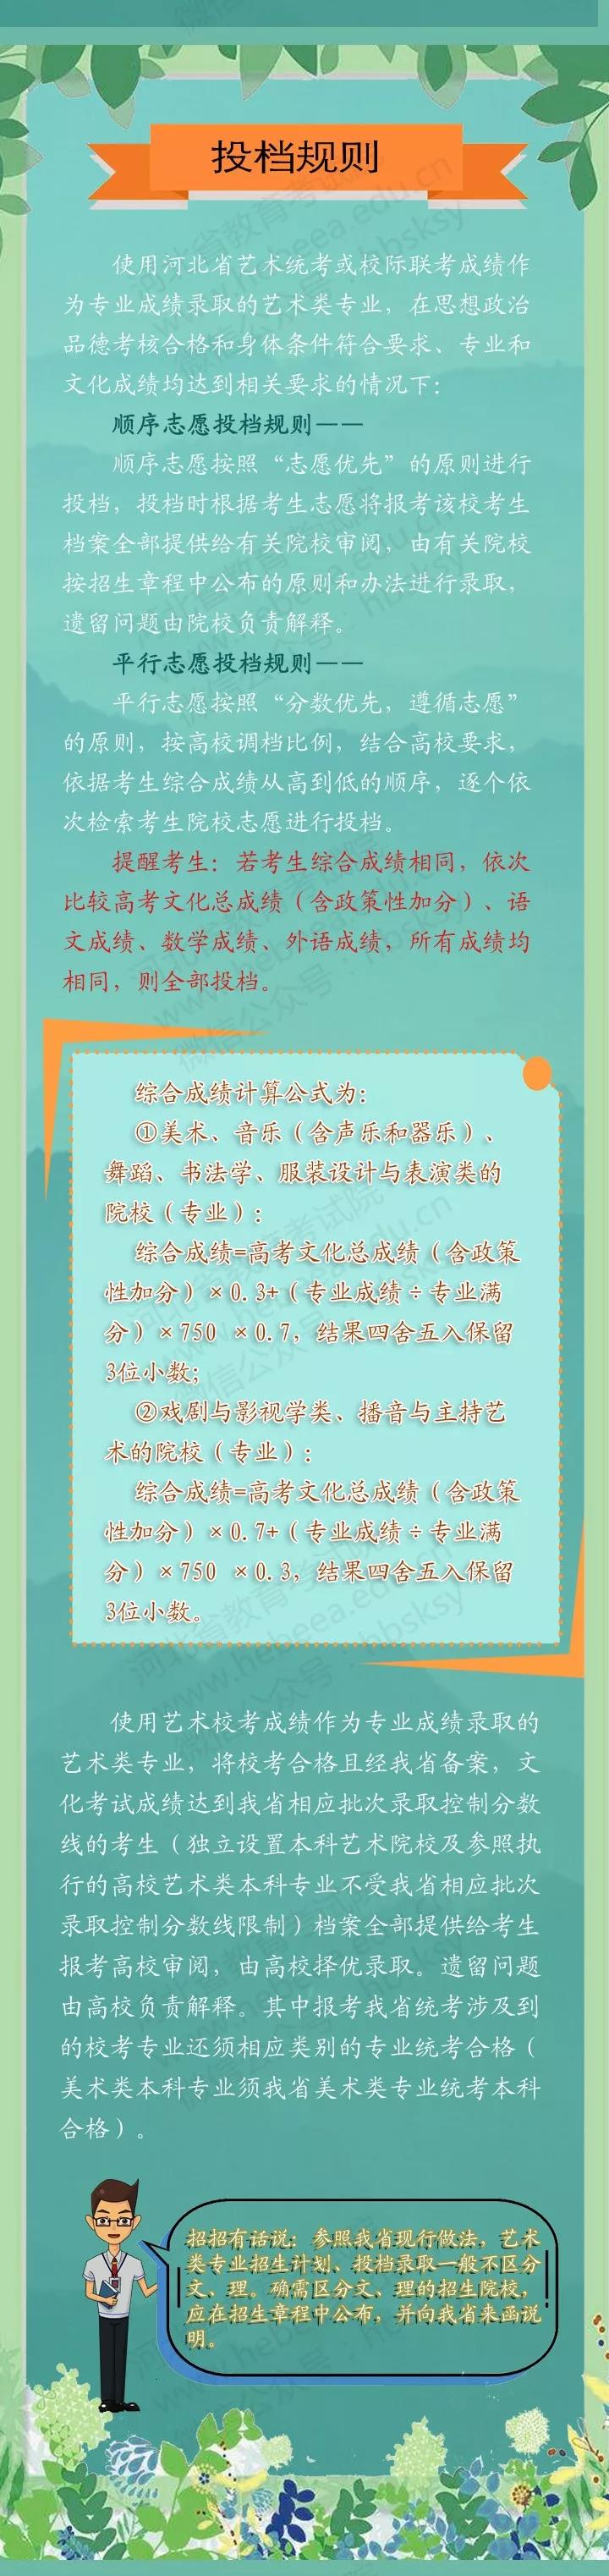 2020年河北省普通高校招生艺术类专业平行志愿图解